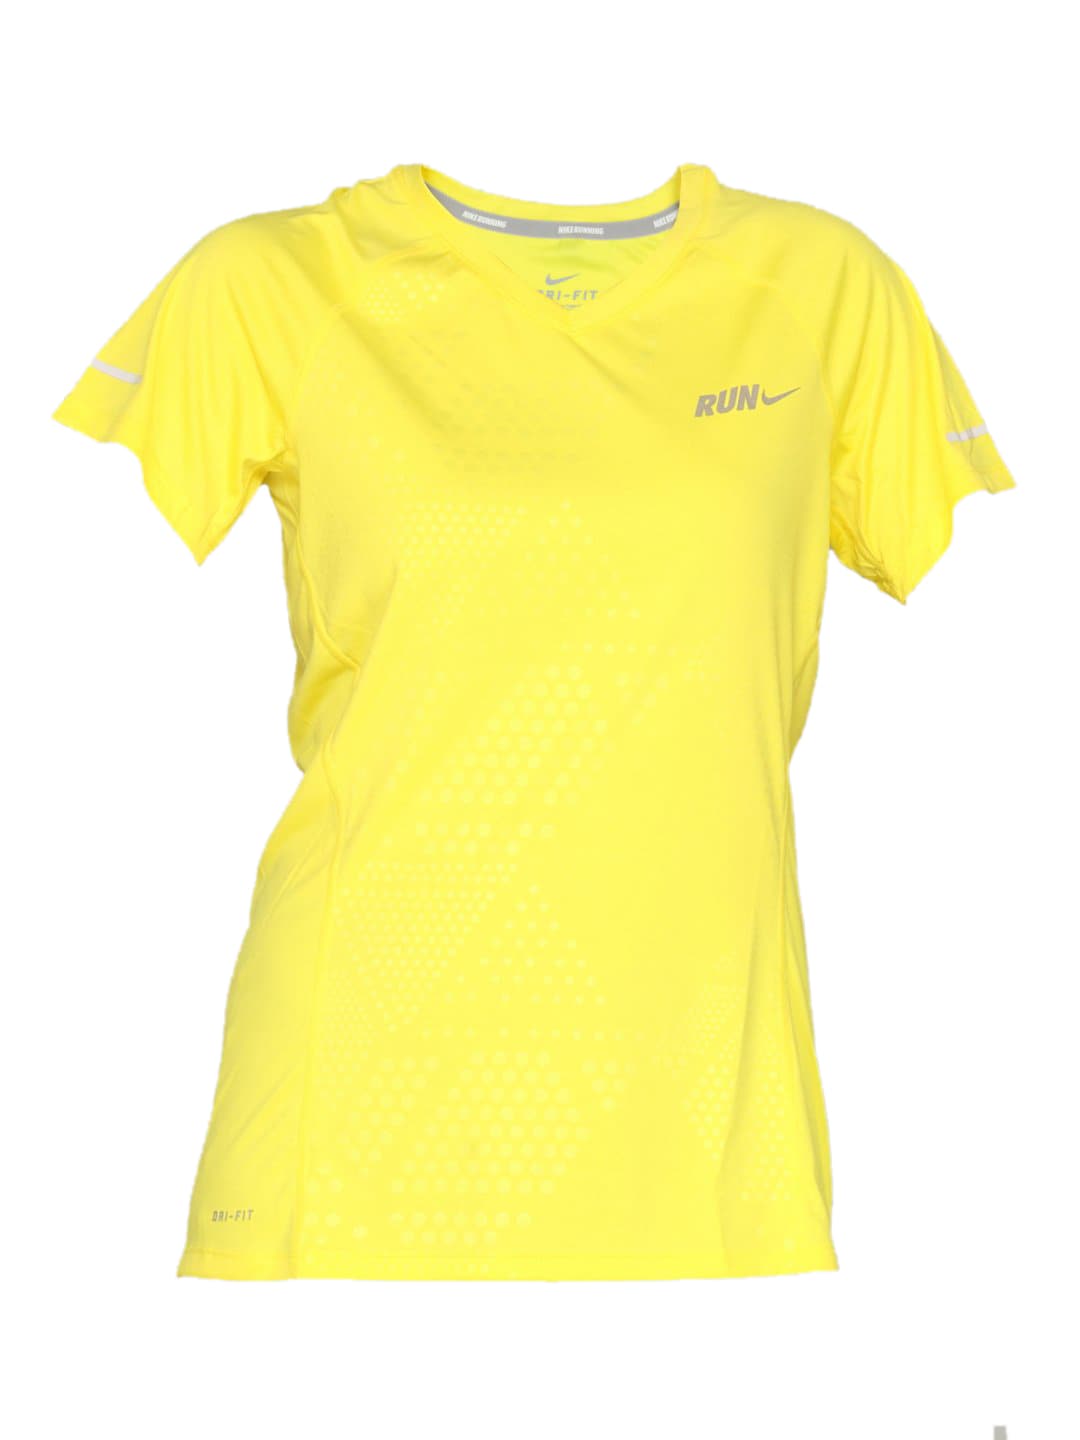 Nike Women's Embossed Yellow T-shirt